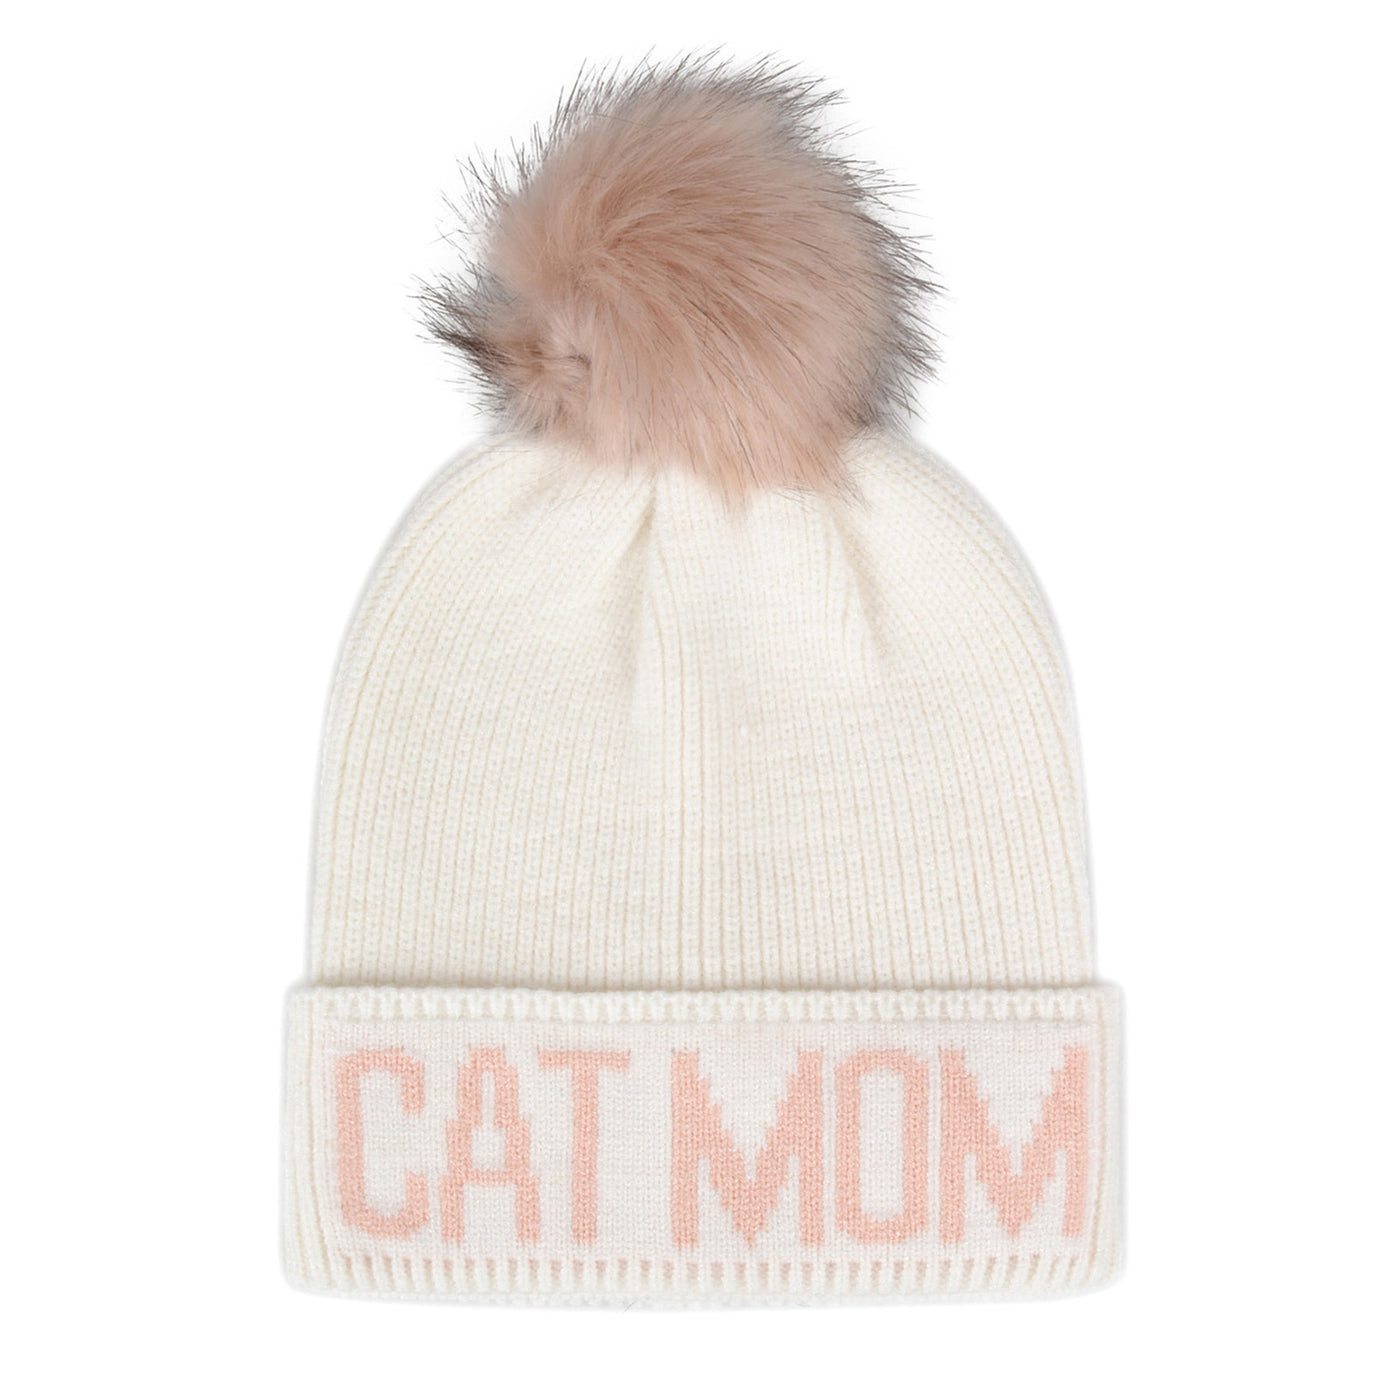 Hatphile Cat Mom Pompom Knit Beanie Toque